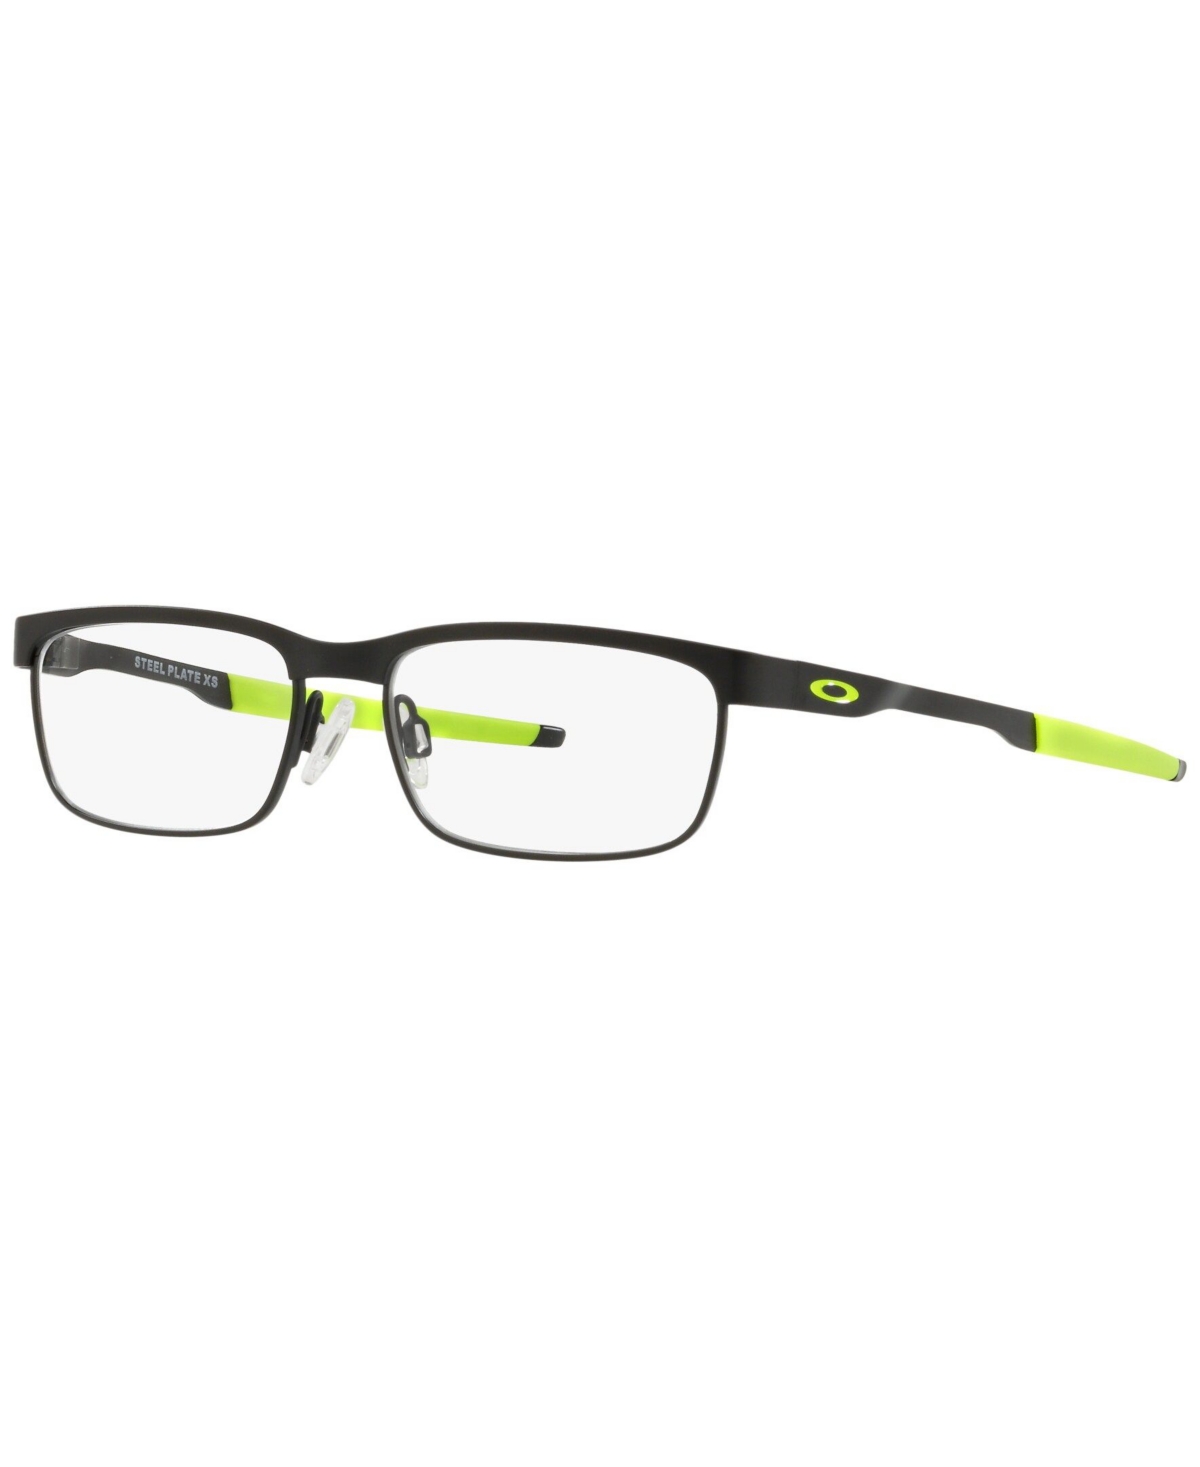 OY3002 Child Rectangle Eyeglasses - Black